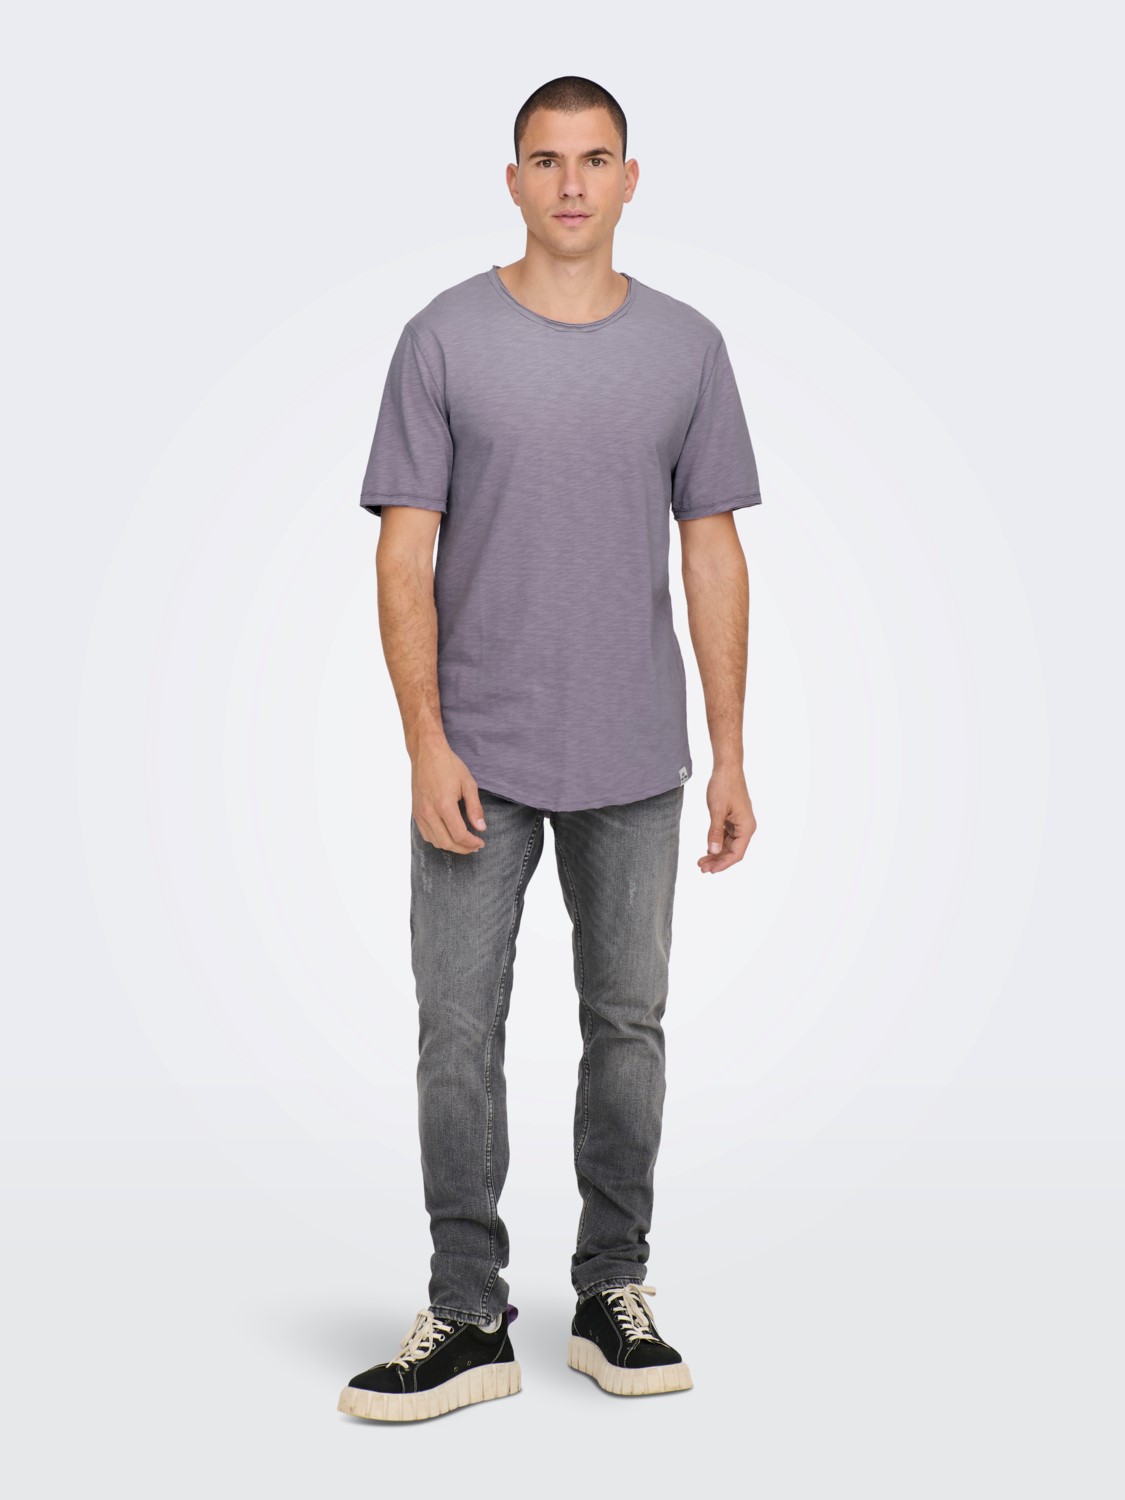 Se Benne Long Line Fit T-Shirt S/S - Purple Ash Large hos monomen